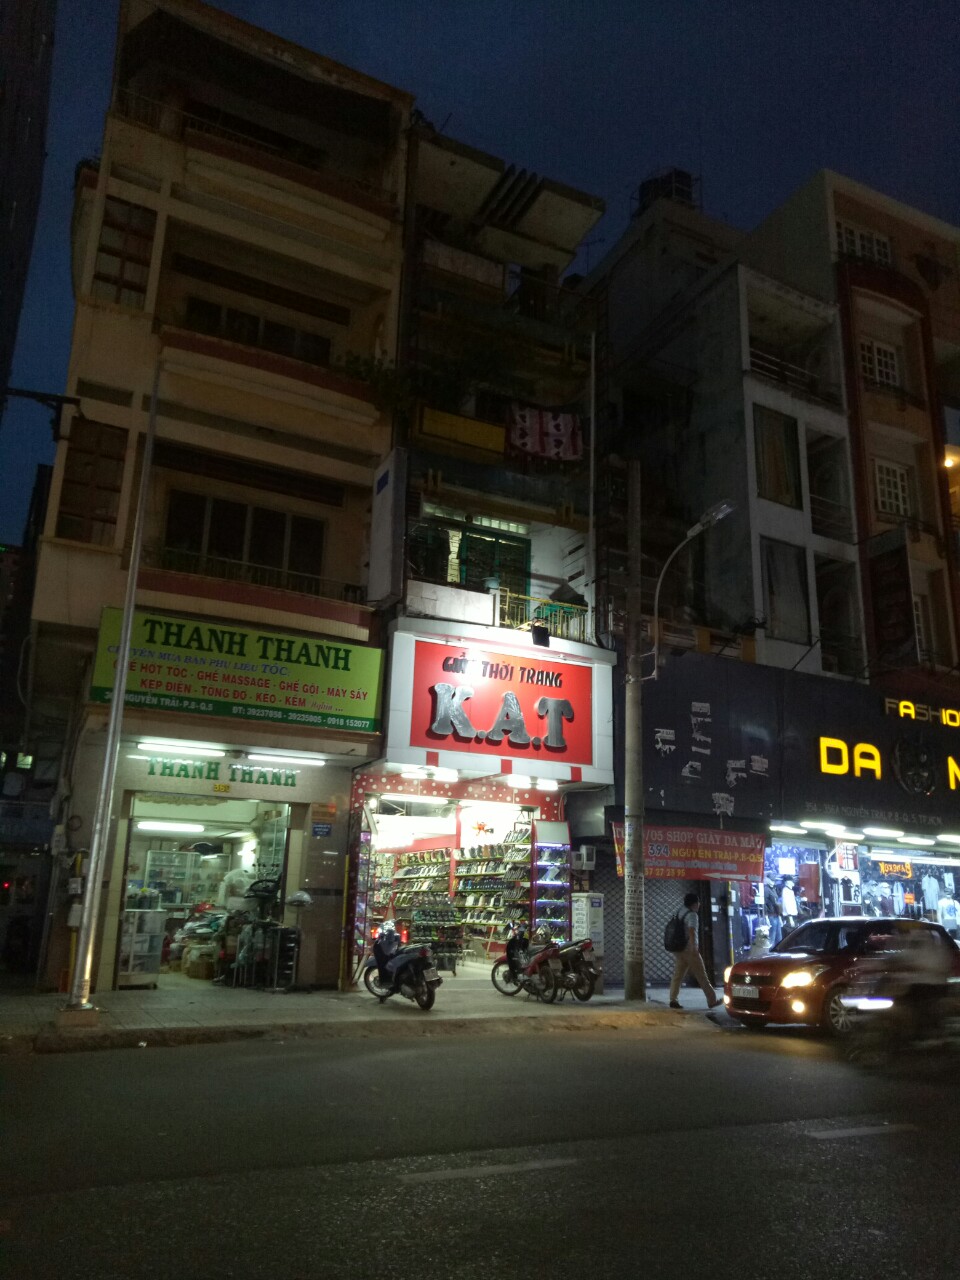 Bán gấp nhà MT Lê Hồng Phong, quận 10, DT 7x16m, 2 lầu, giá rẻ nhất con đường này góc Hùng Vương